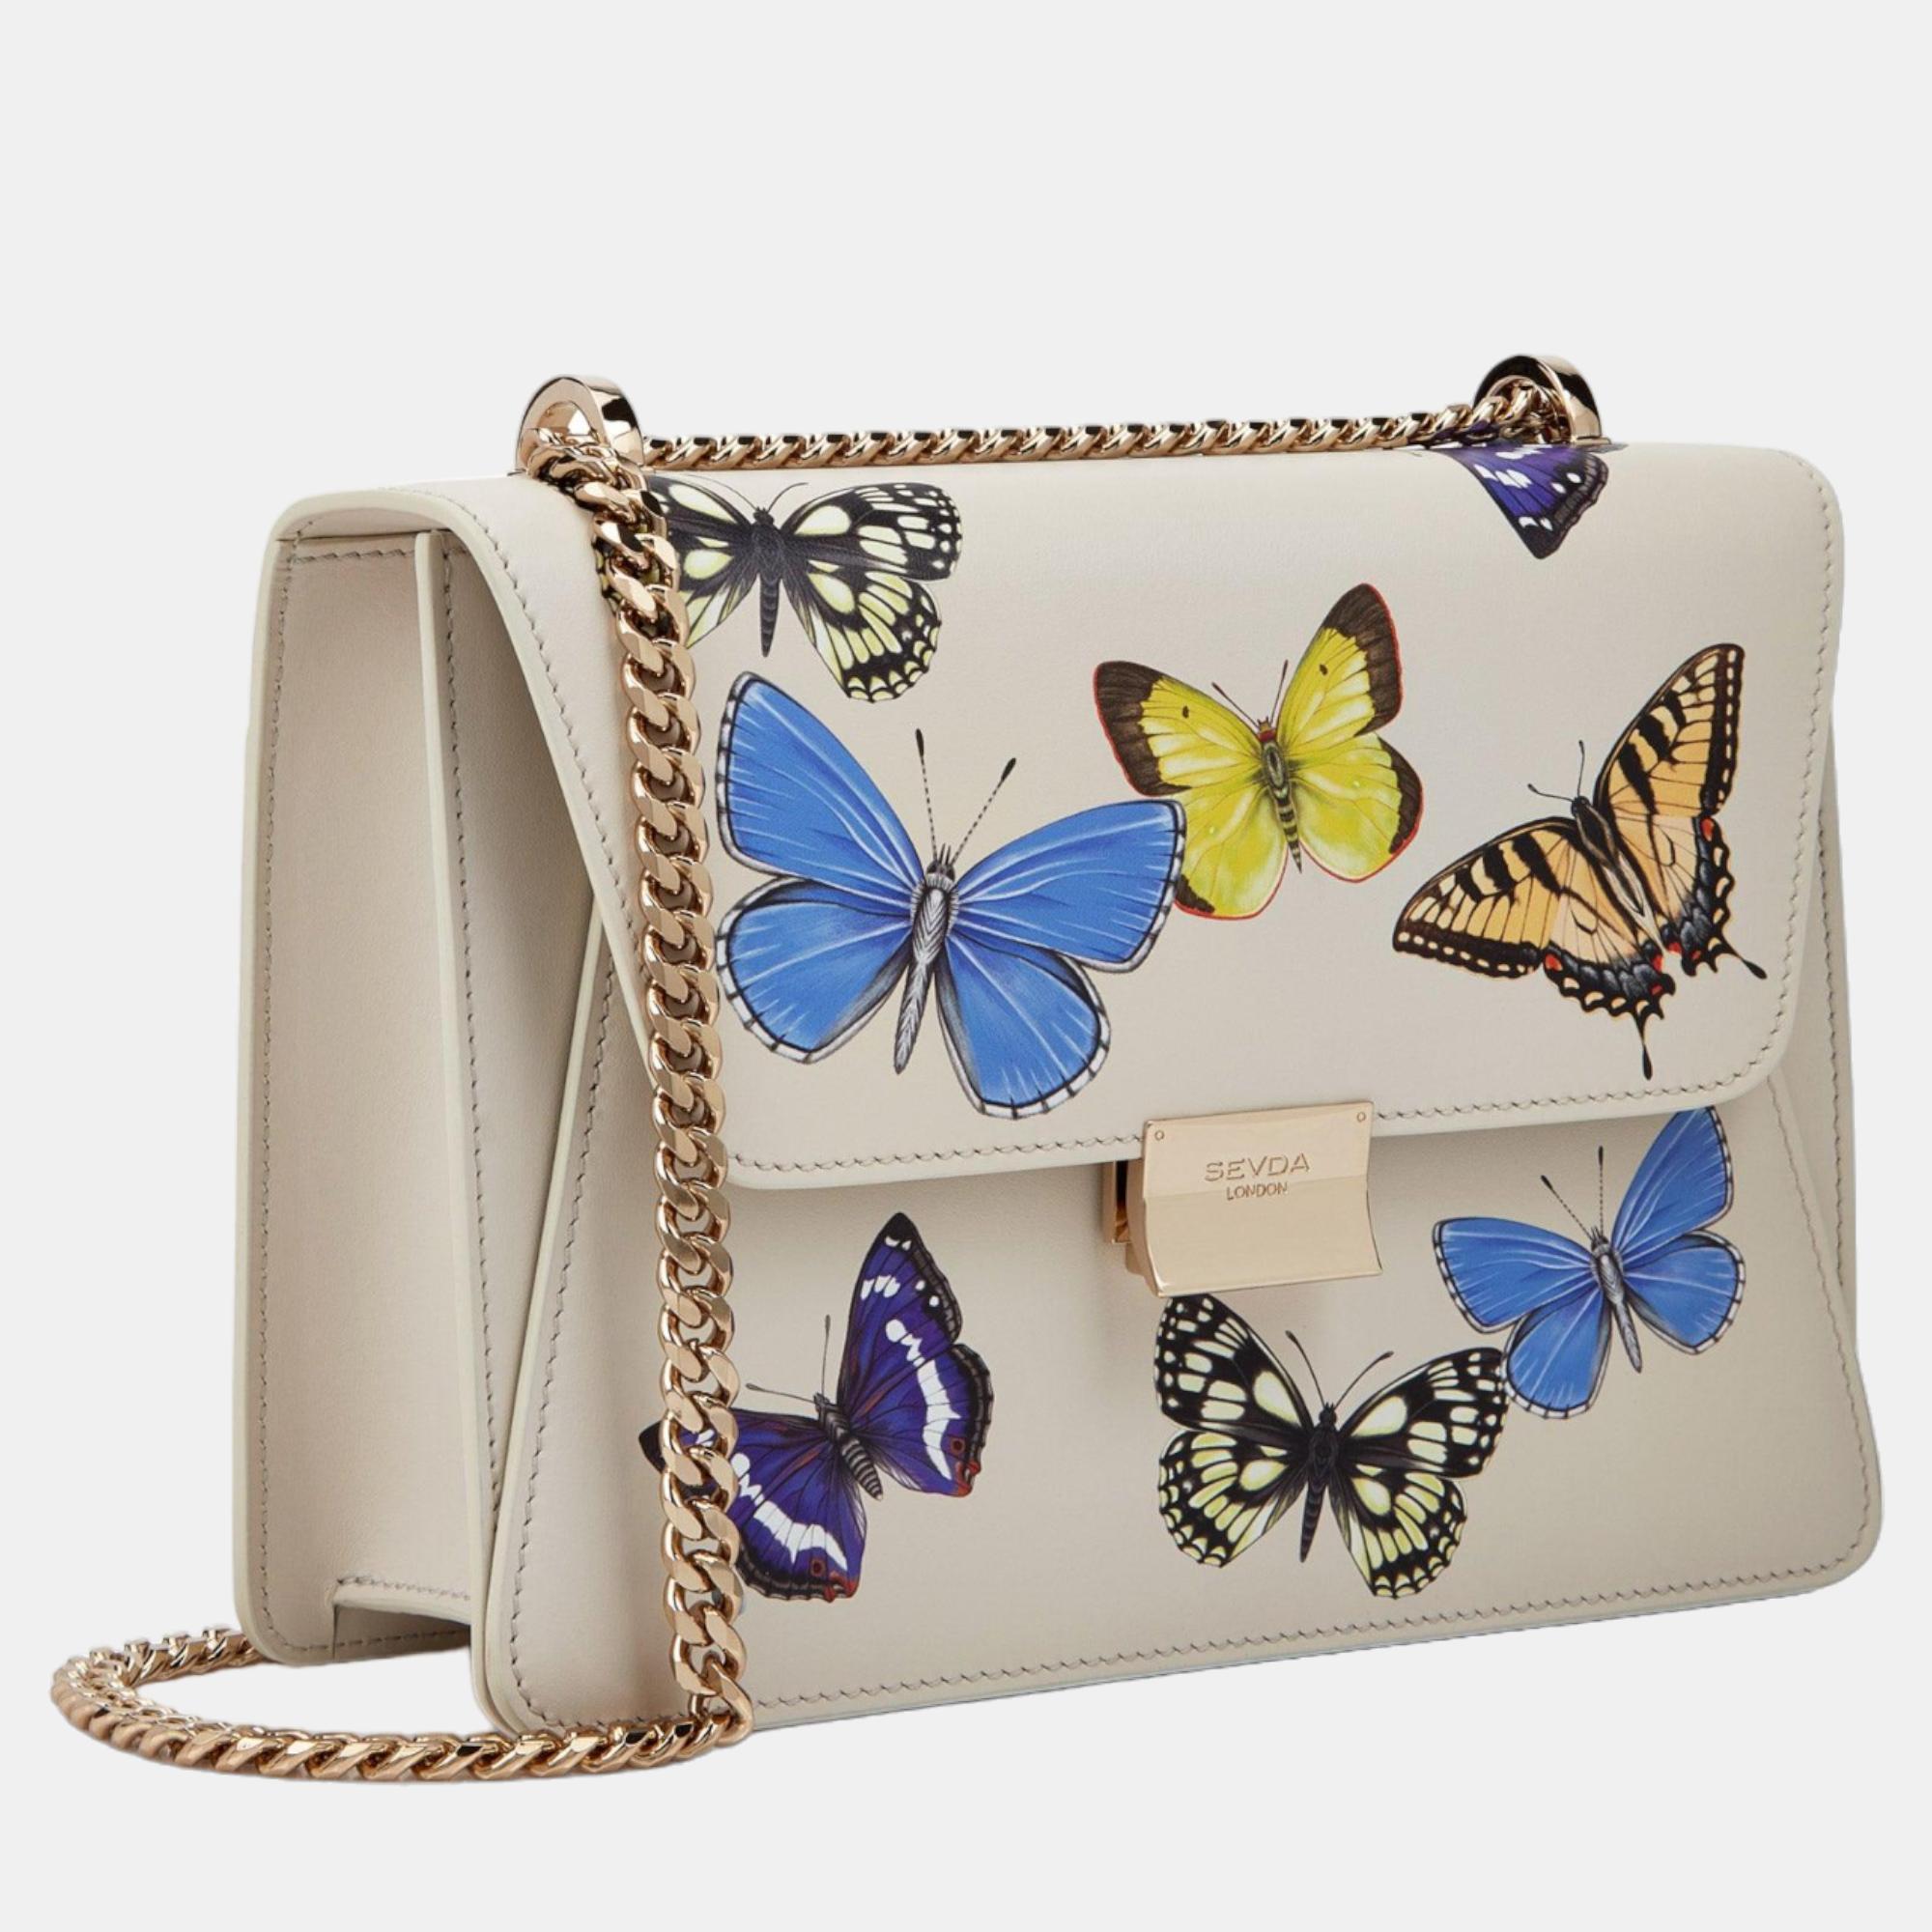 

Sevda London Kate Shoulder Bag Off White Butterflies, Cream